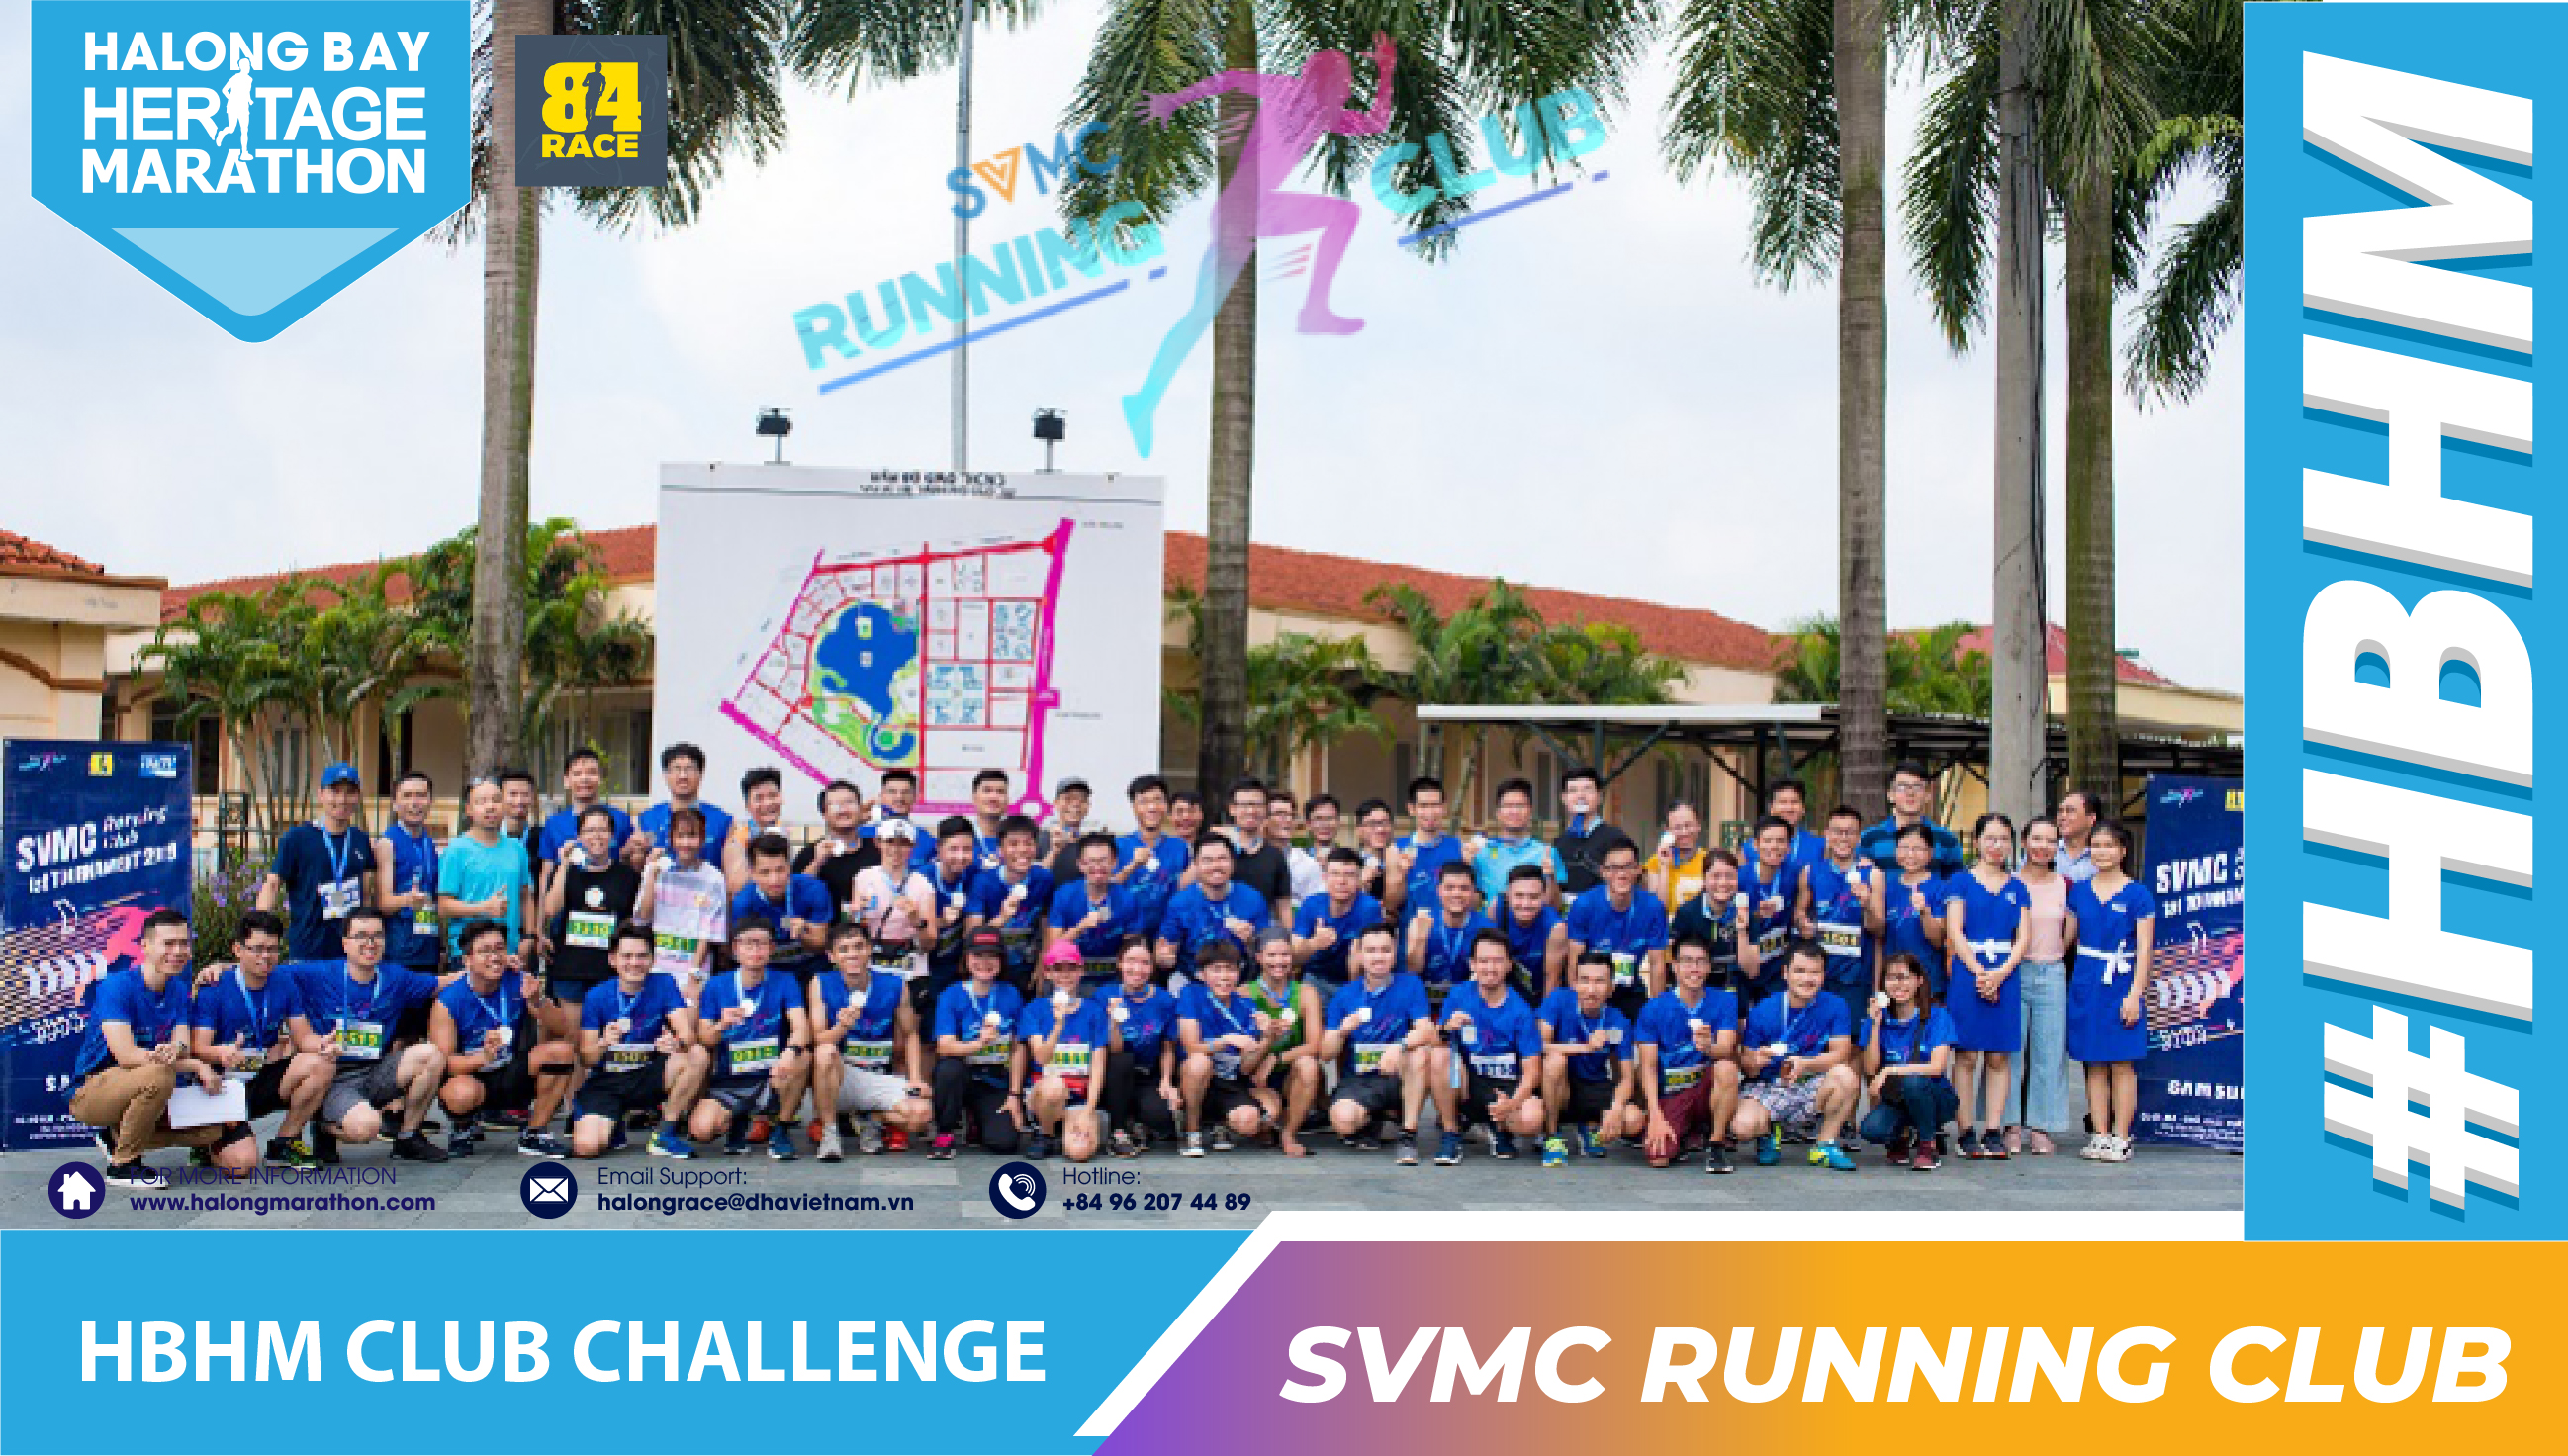 HBHM Challenge 2020 - SVMC Running Club